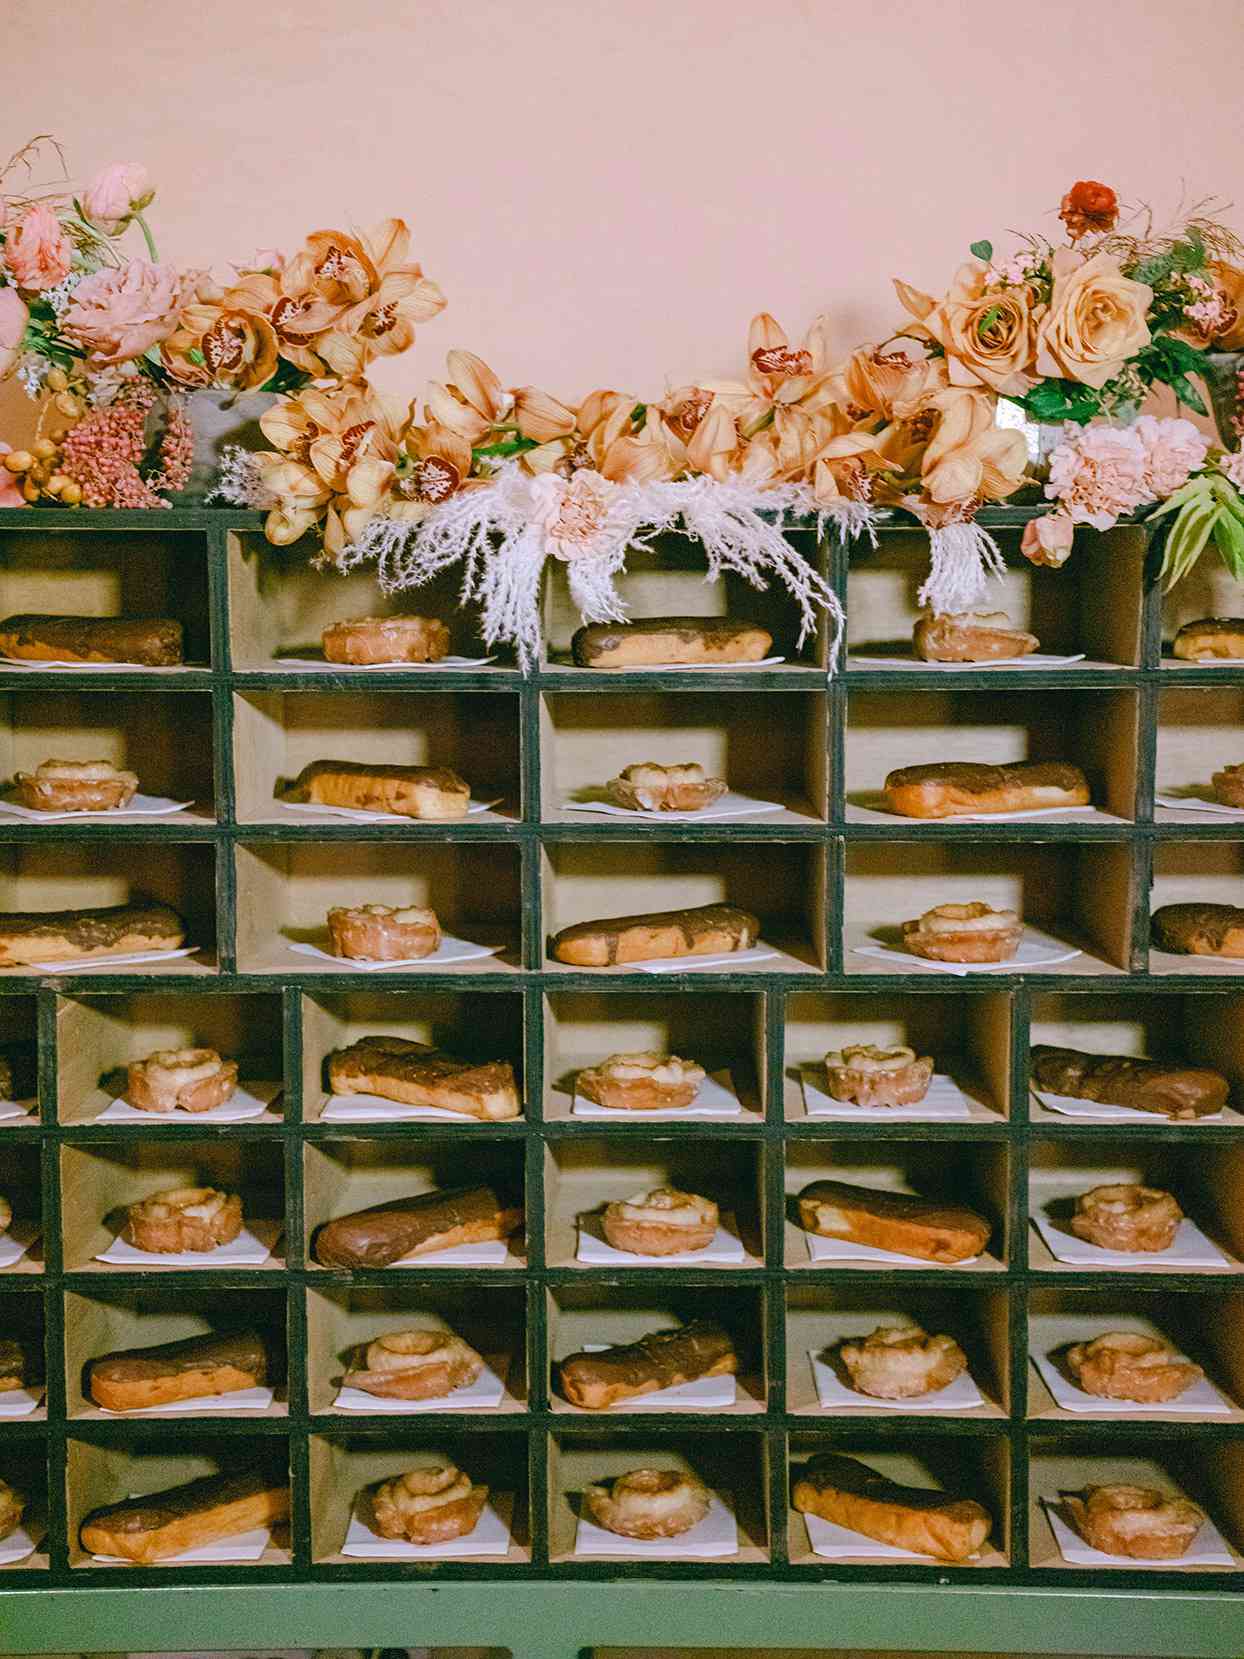 antique wooden shelf with wedding dessert pastries